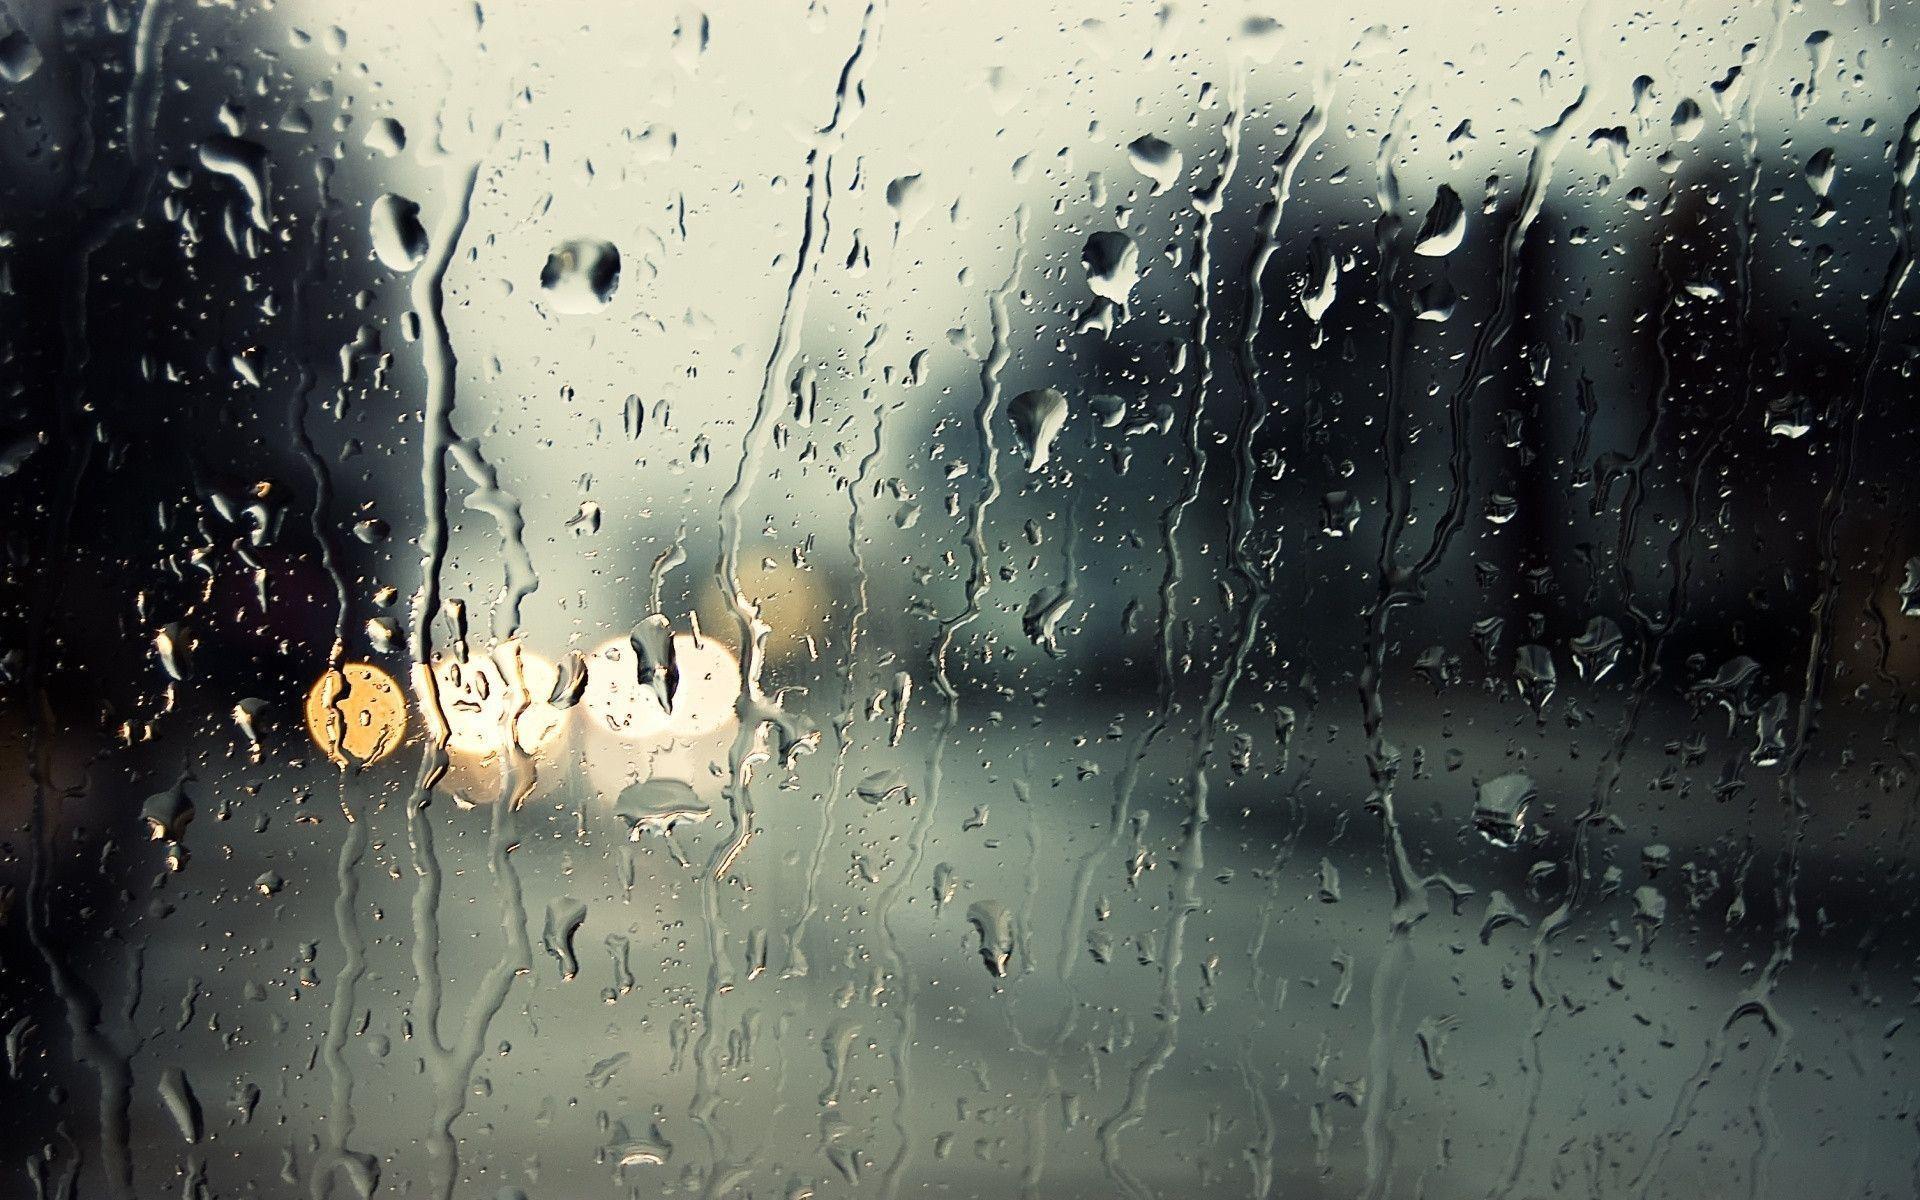 Rain entering through windows